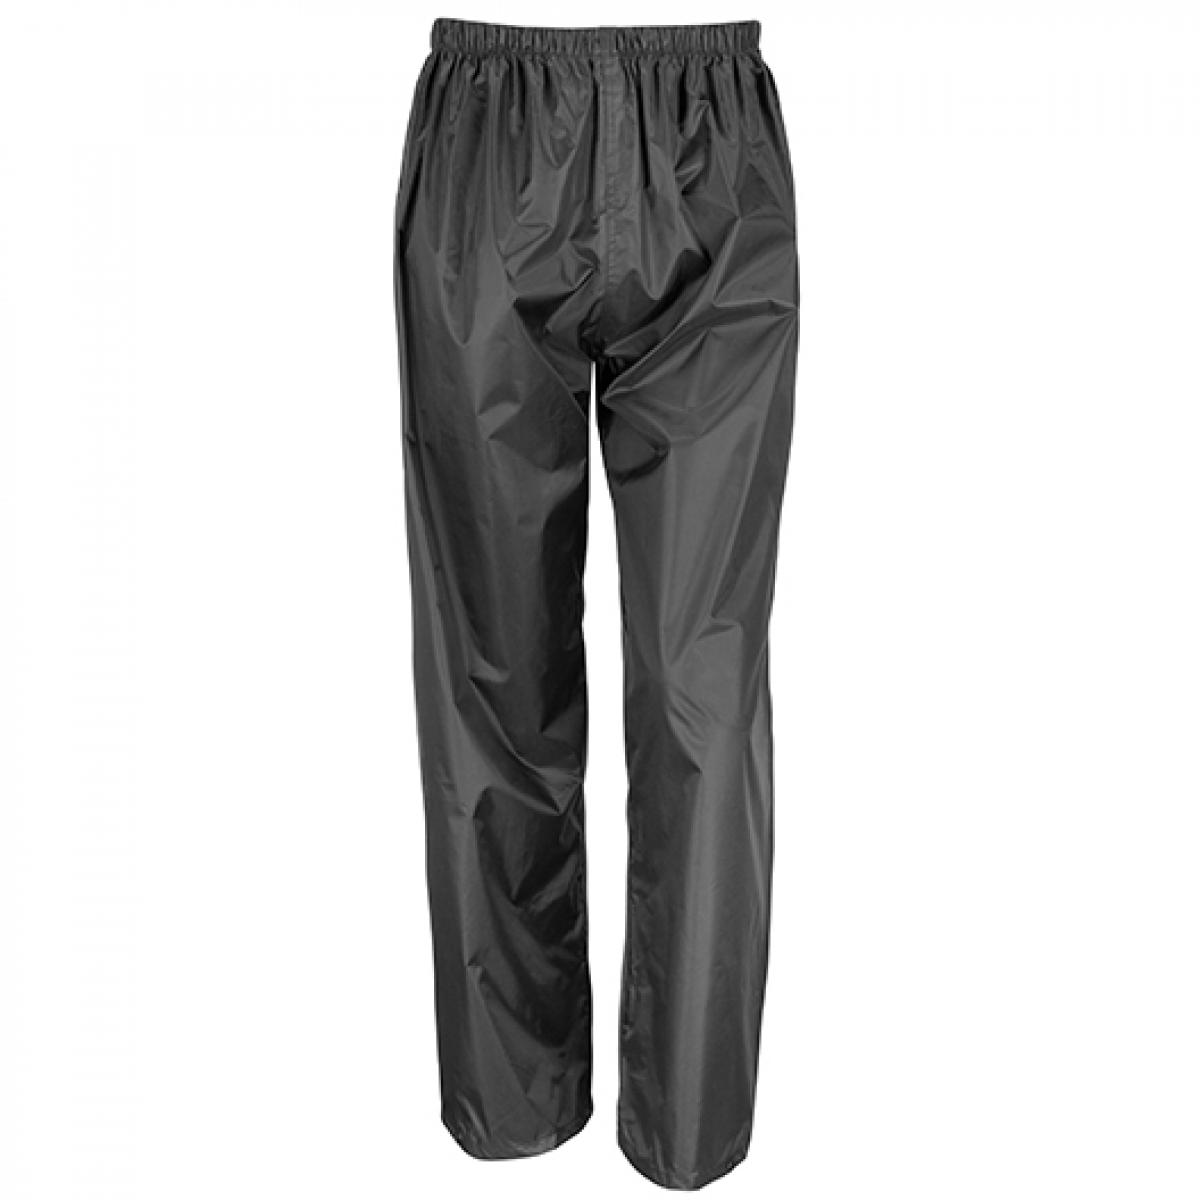 Hersteller: Result Core Herstellernummer: R226X Artikelbezeichnung: Waterproof Over Trousers / Wasserdicht bis 2.000 mm Farbe: Black